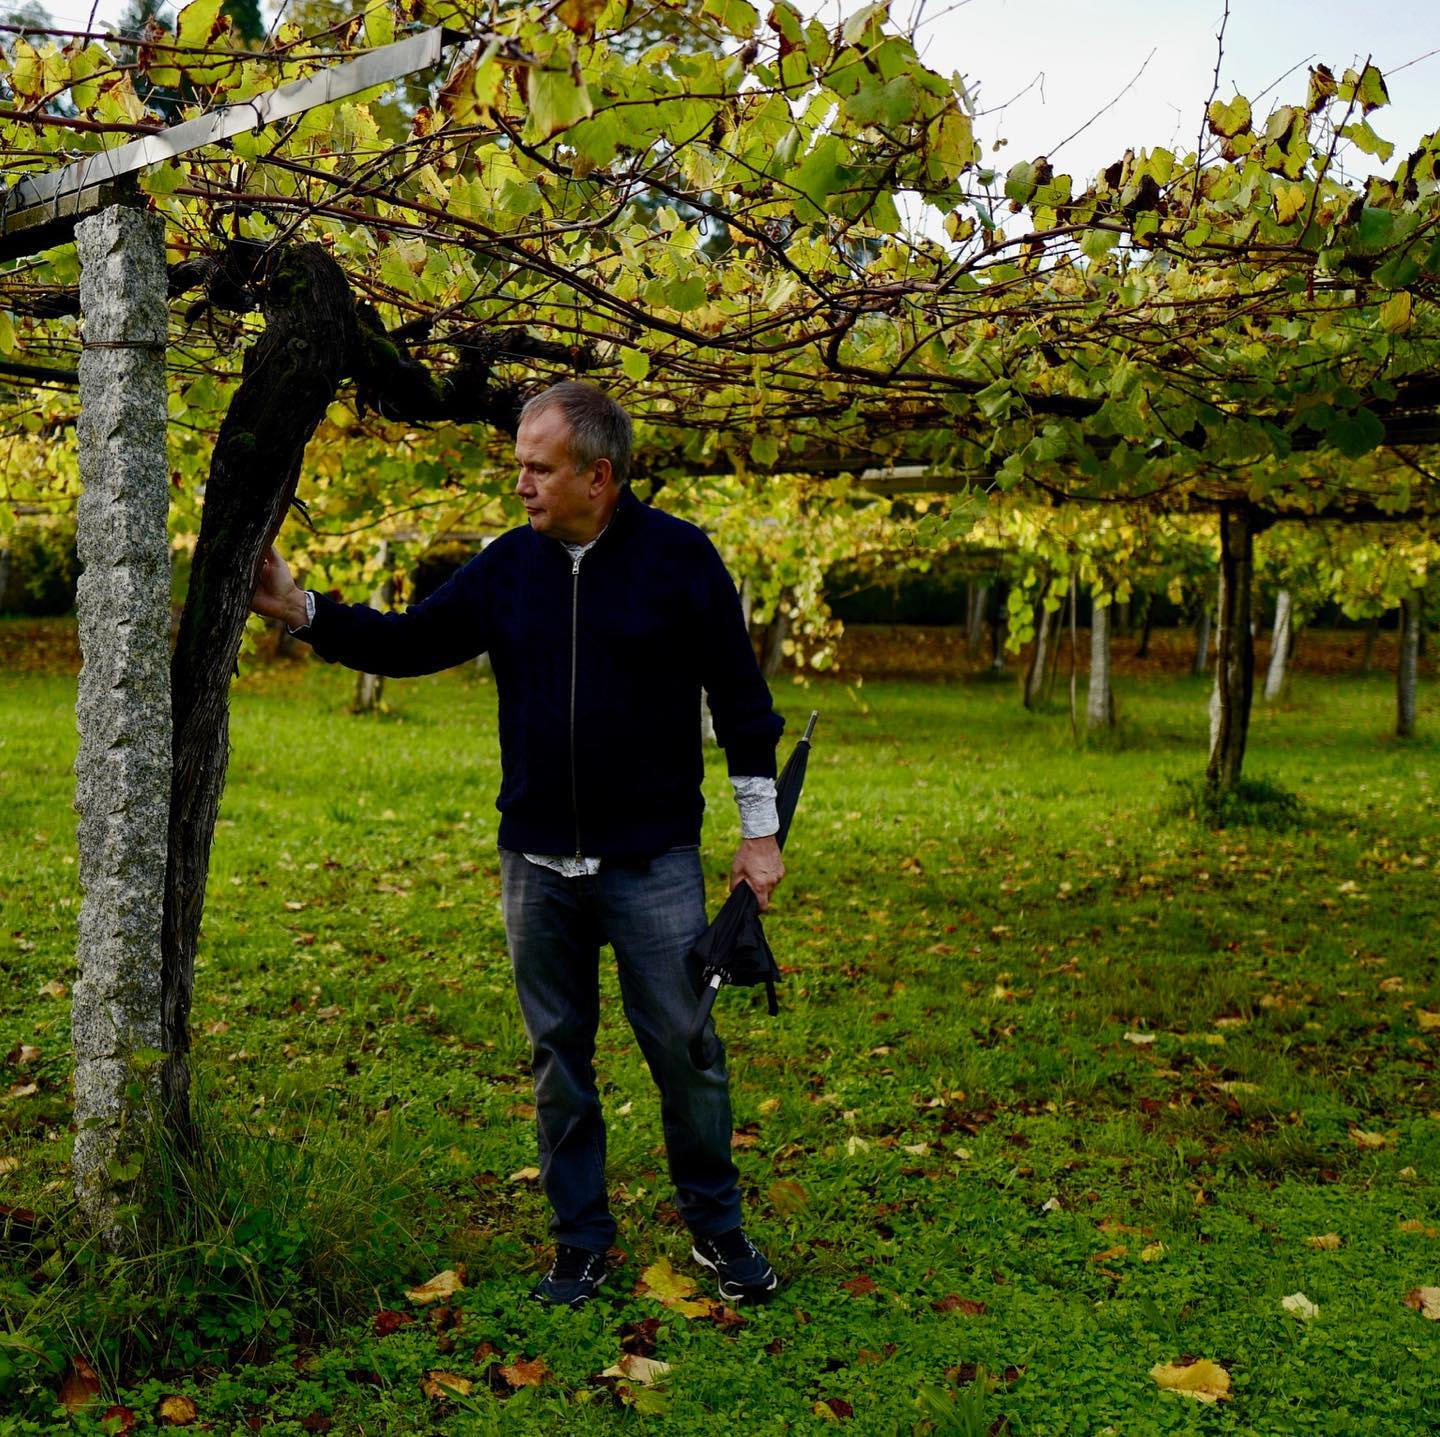 Сейчас Олег Чиркунов увлечен виноделием — у него есть собственный виноградник на юге Франции